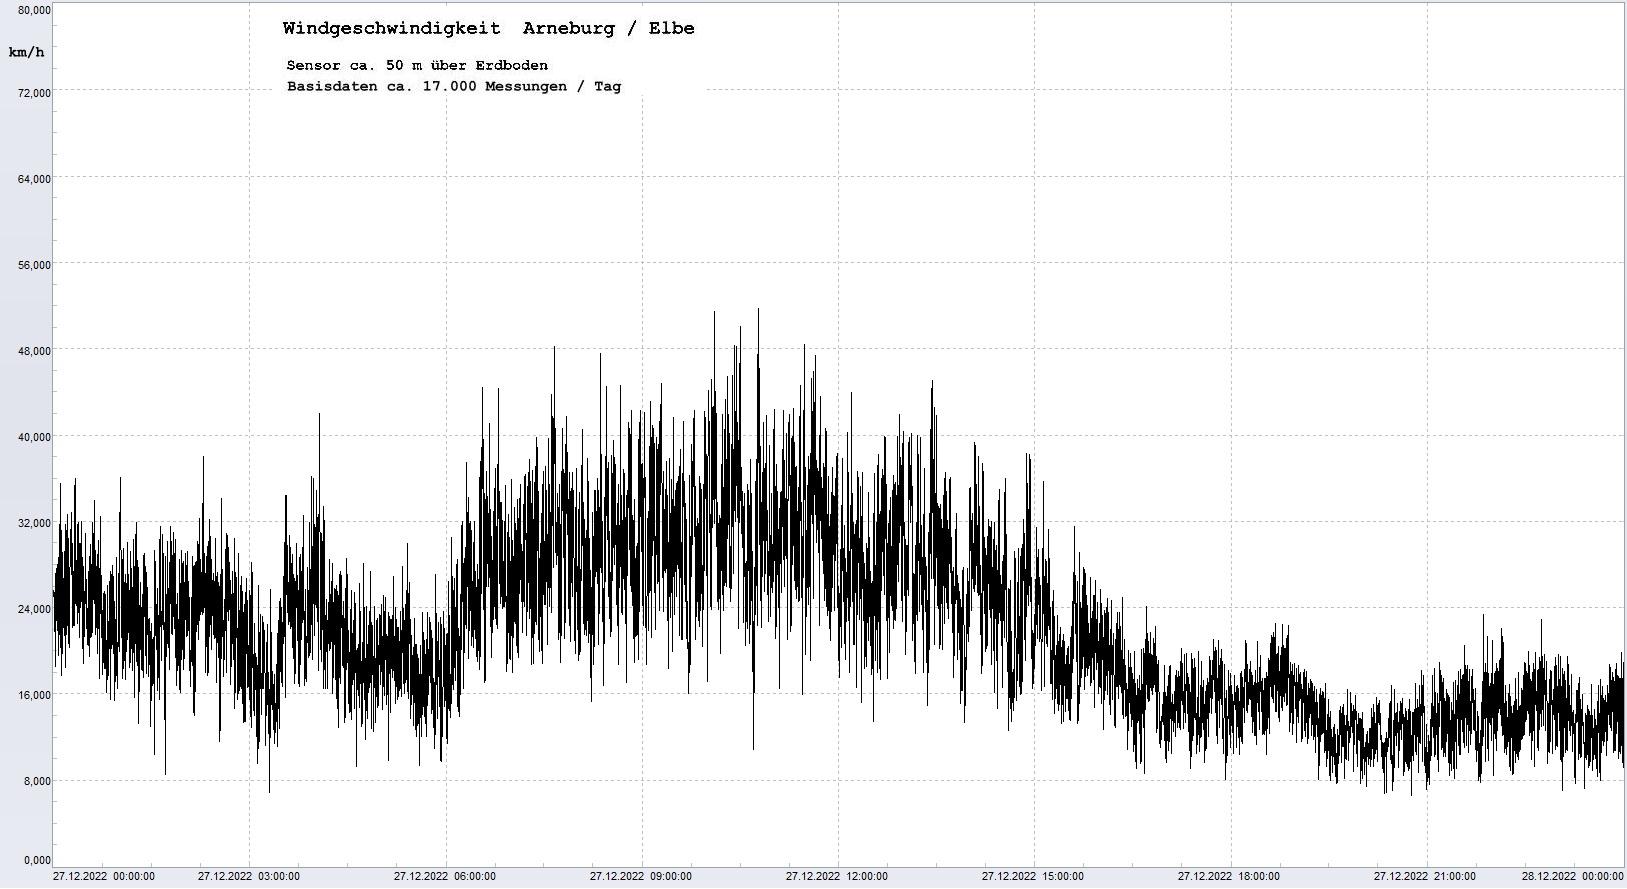 Arneburg Tages-Diagramm Winddaten, 27.12.2022
  Diagramm, Sensor auf Gebäude, ca. 50 m über Erdboden, Basis: 5s-Aufzeichnung